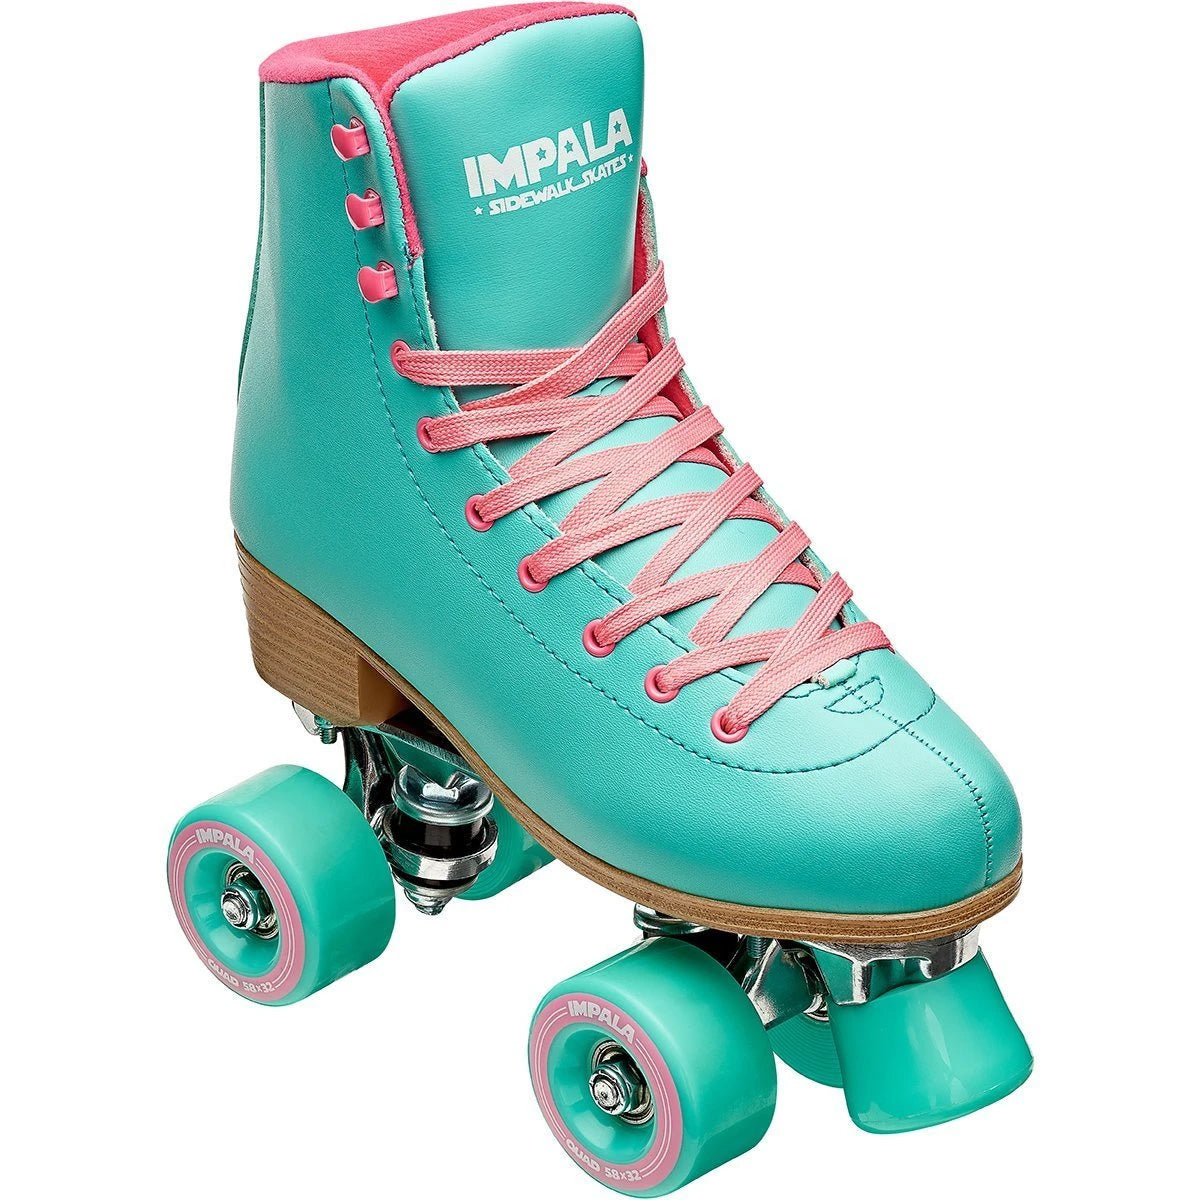 Impala Sidewalk Womens Roller Skates Aqua 6